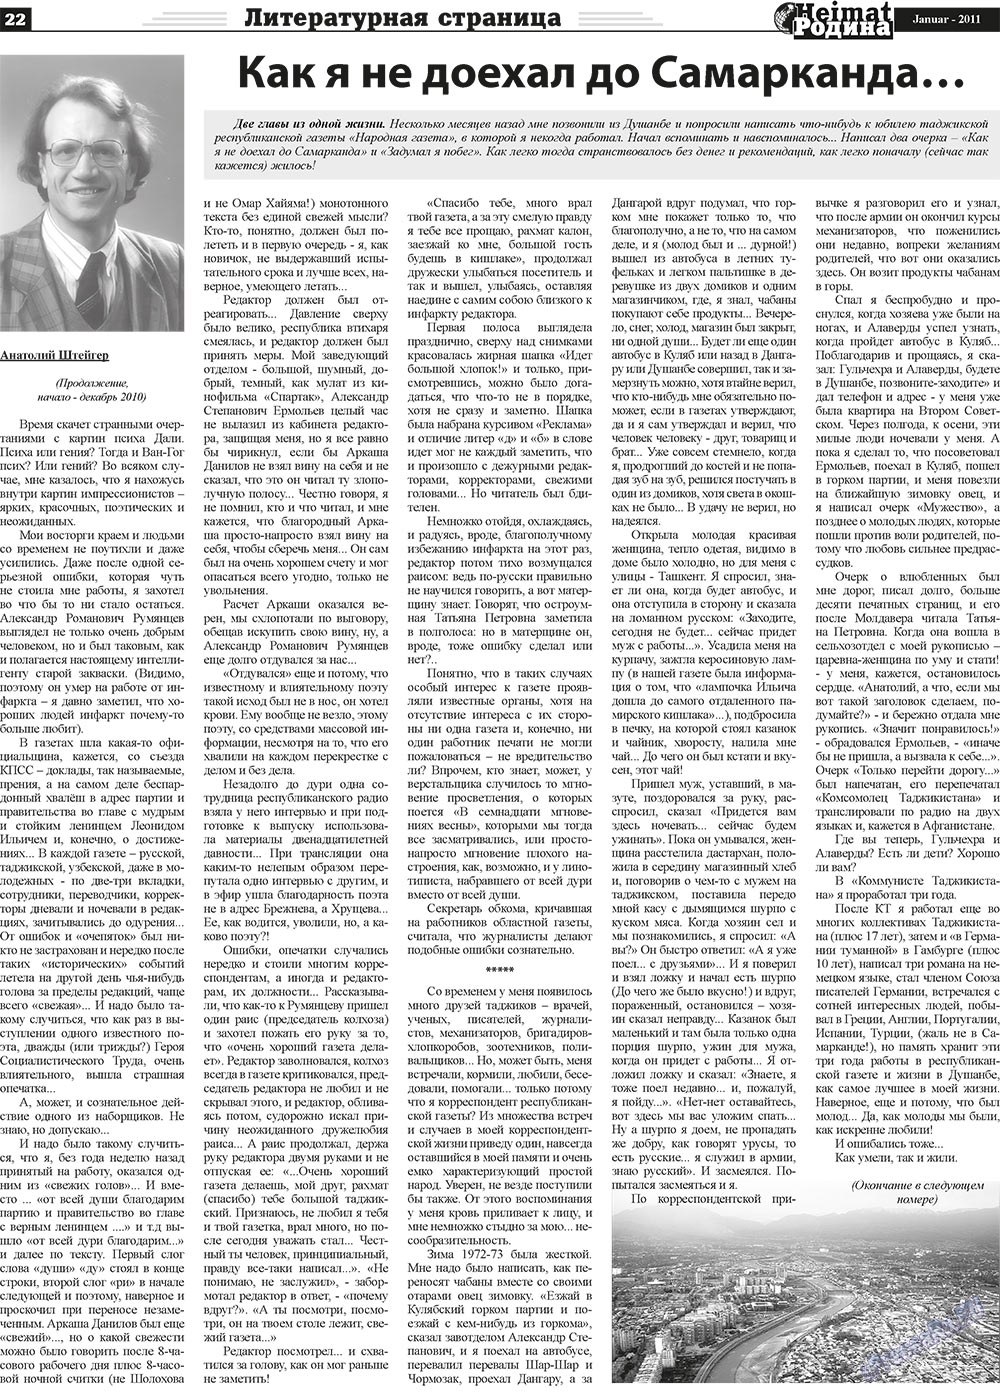 Heimat-Родина (газета). 2011 год, номер 1, стр. 22